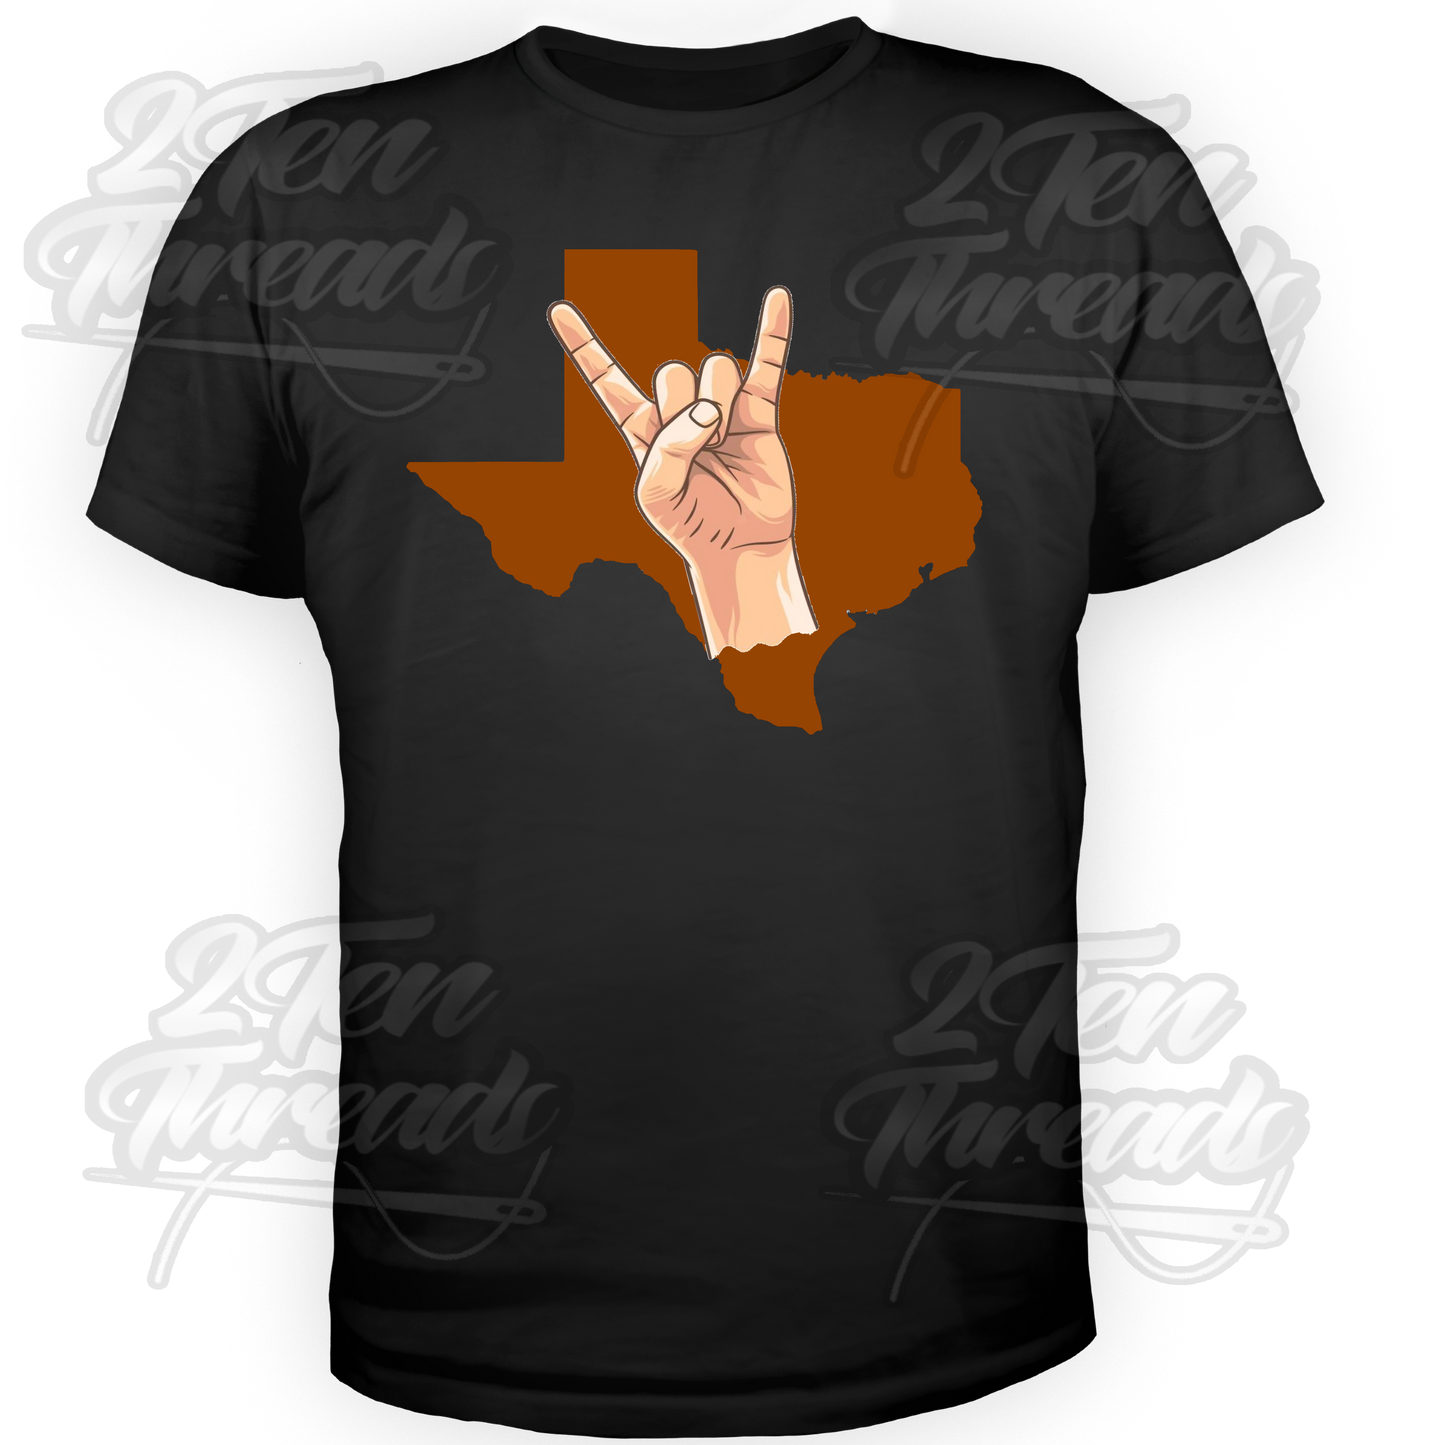 Texas Horns Up Shirt